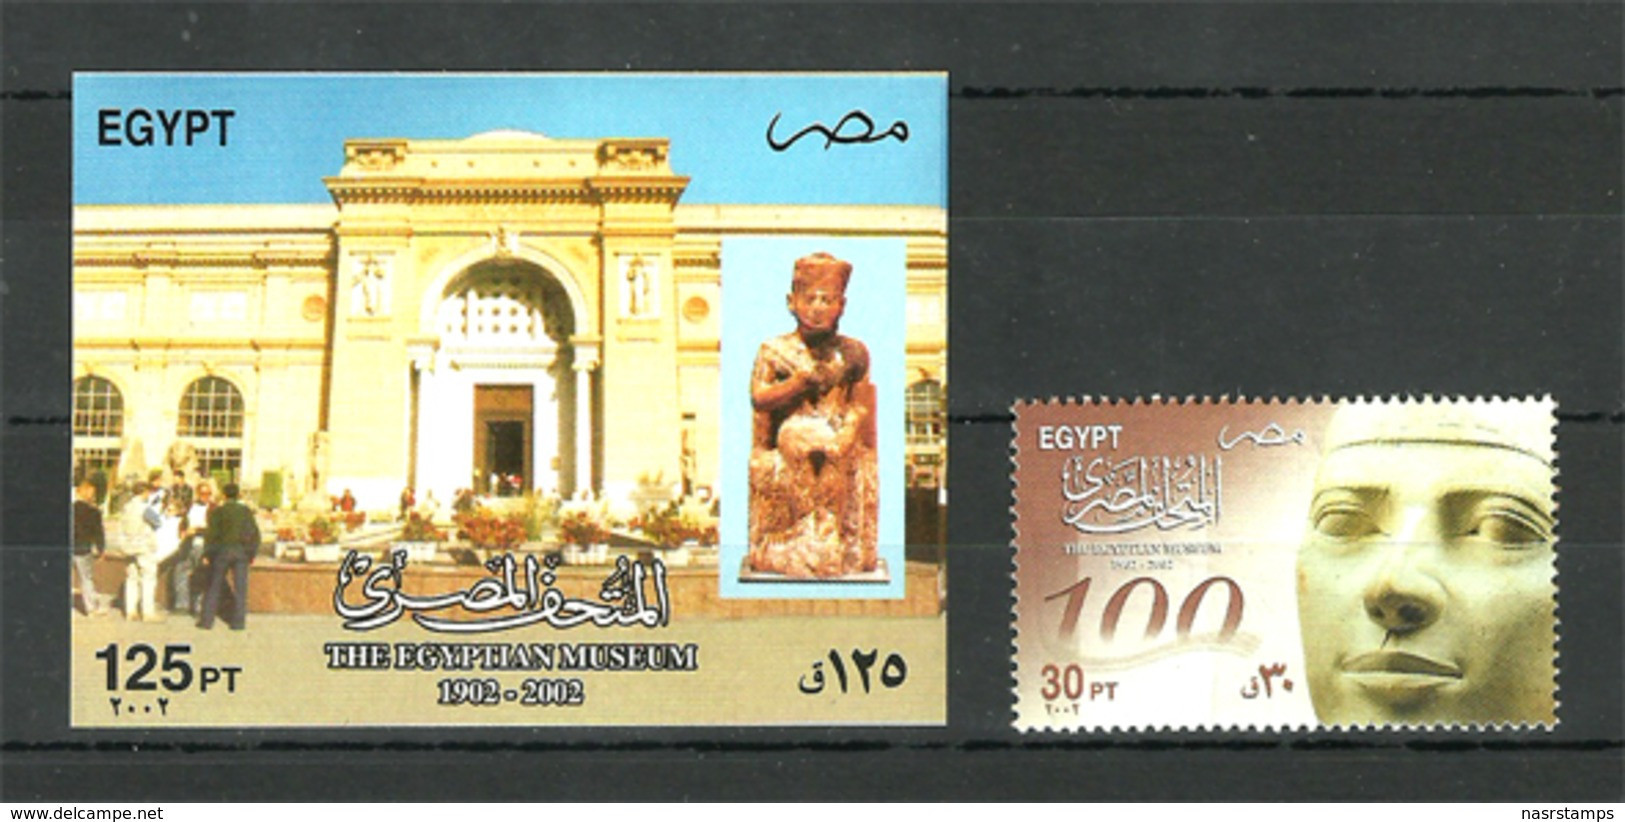 Egypt - 2002 - Stamp & S/S - ( 100 Anniv. - Egyptian Museum, Cent. ) - MNH (**) - Egyptology